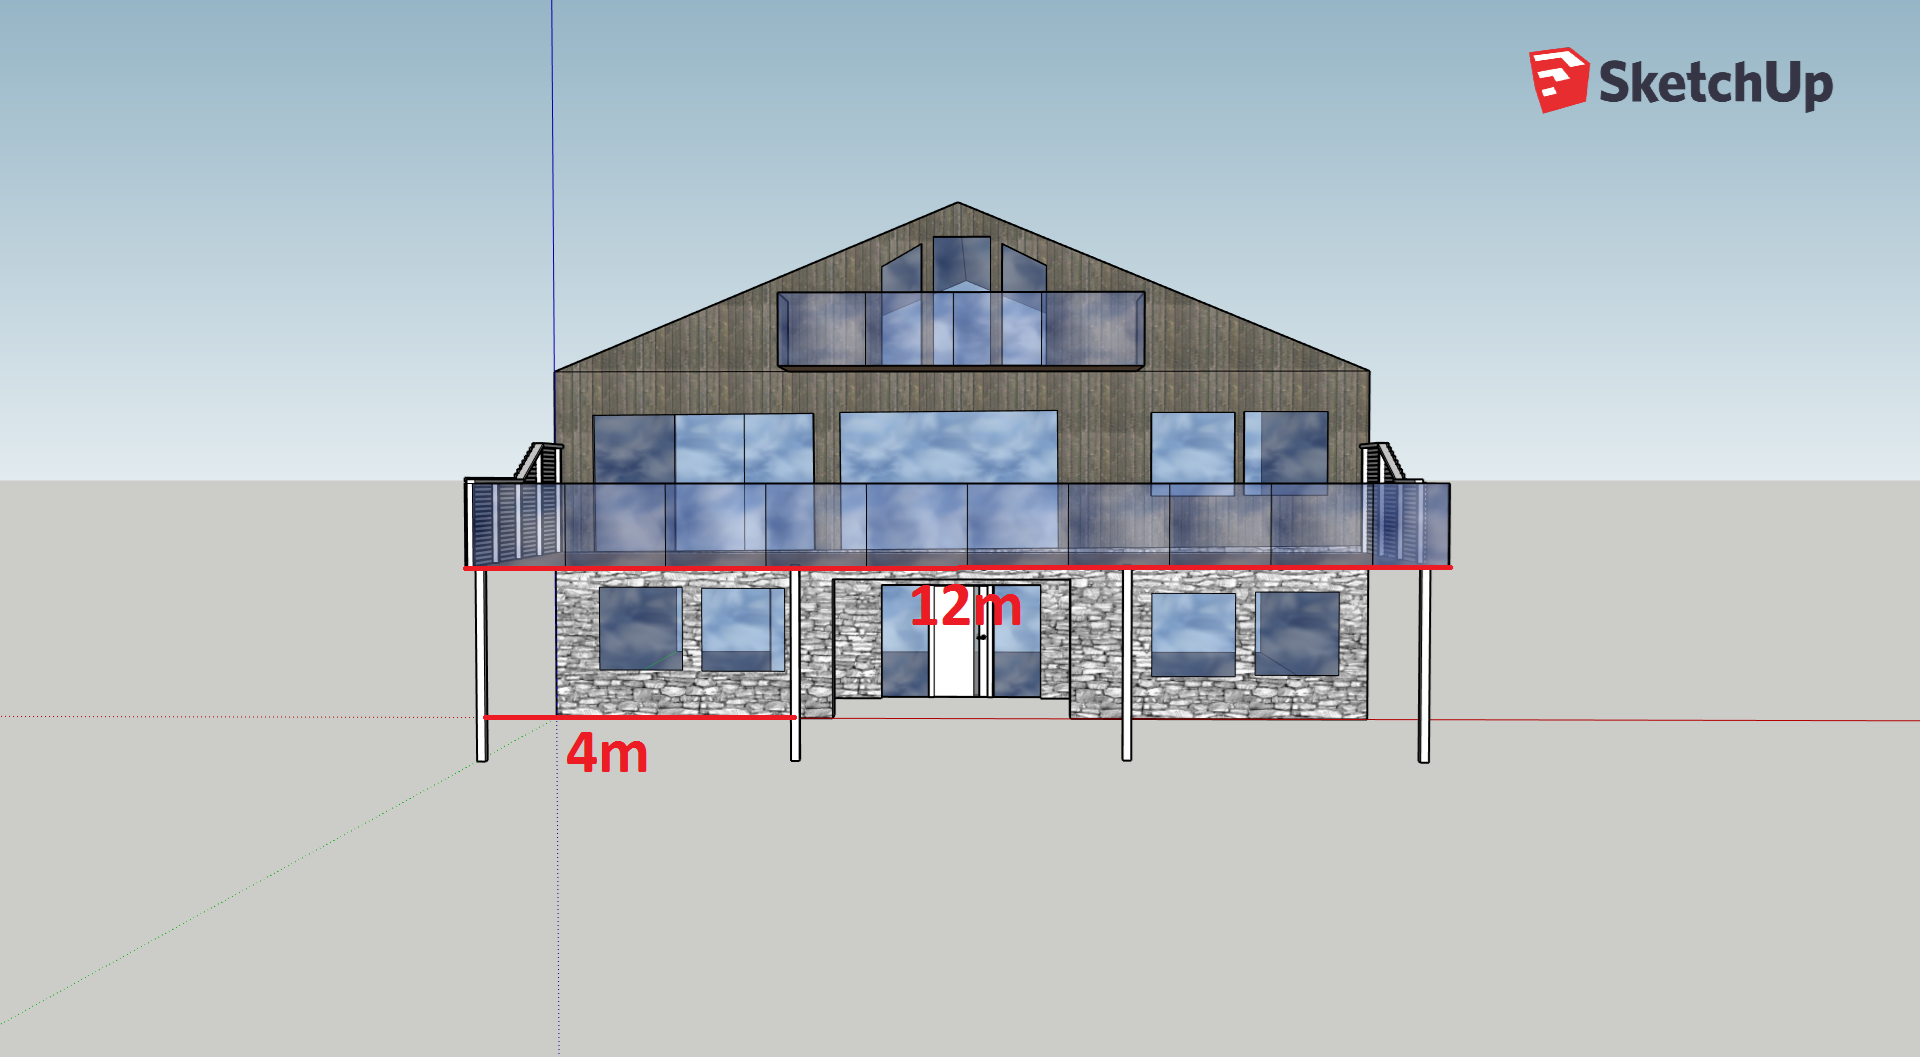 Bygge terrasse. 4m avstand mellom søyler, mulig? - Q:\4. Prosess\5. Lab\Ben\Privat\Terrasse 2.png - benebni89